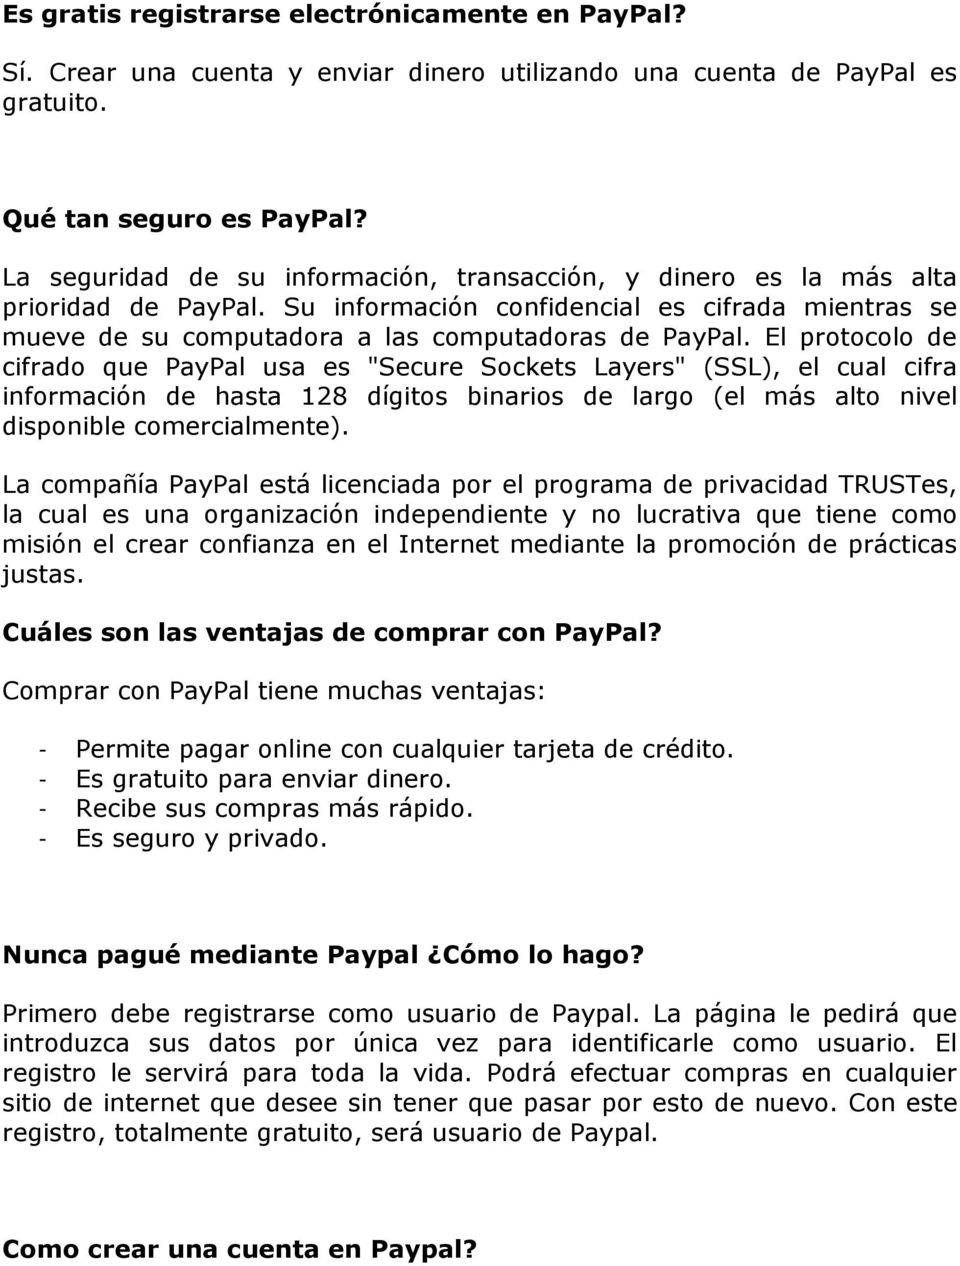 El protocolo de cifrado que PayPal usa es "Secure Sockets Layers" (SSL), el cual cifra información de hasta 128 dígitos binarios de largo (el más alto nivel disponible comercialmente).